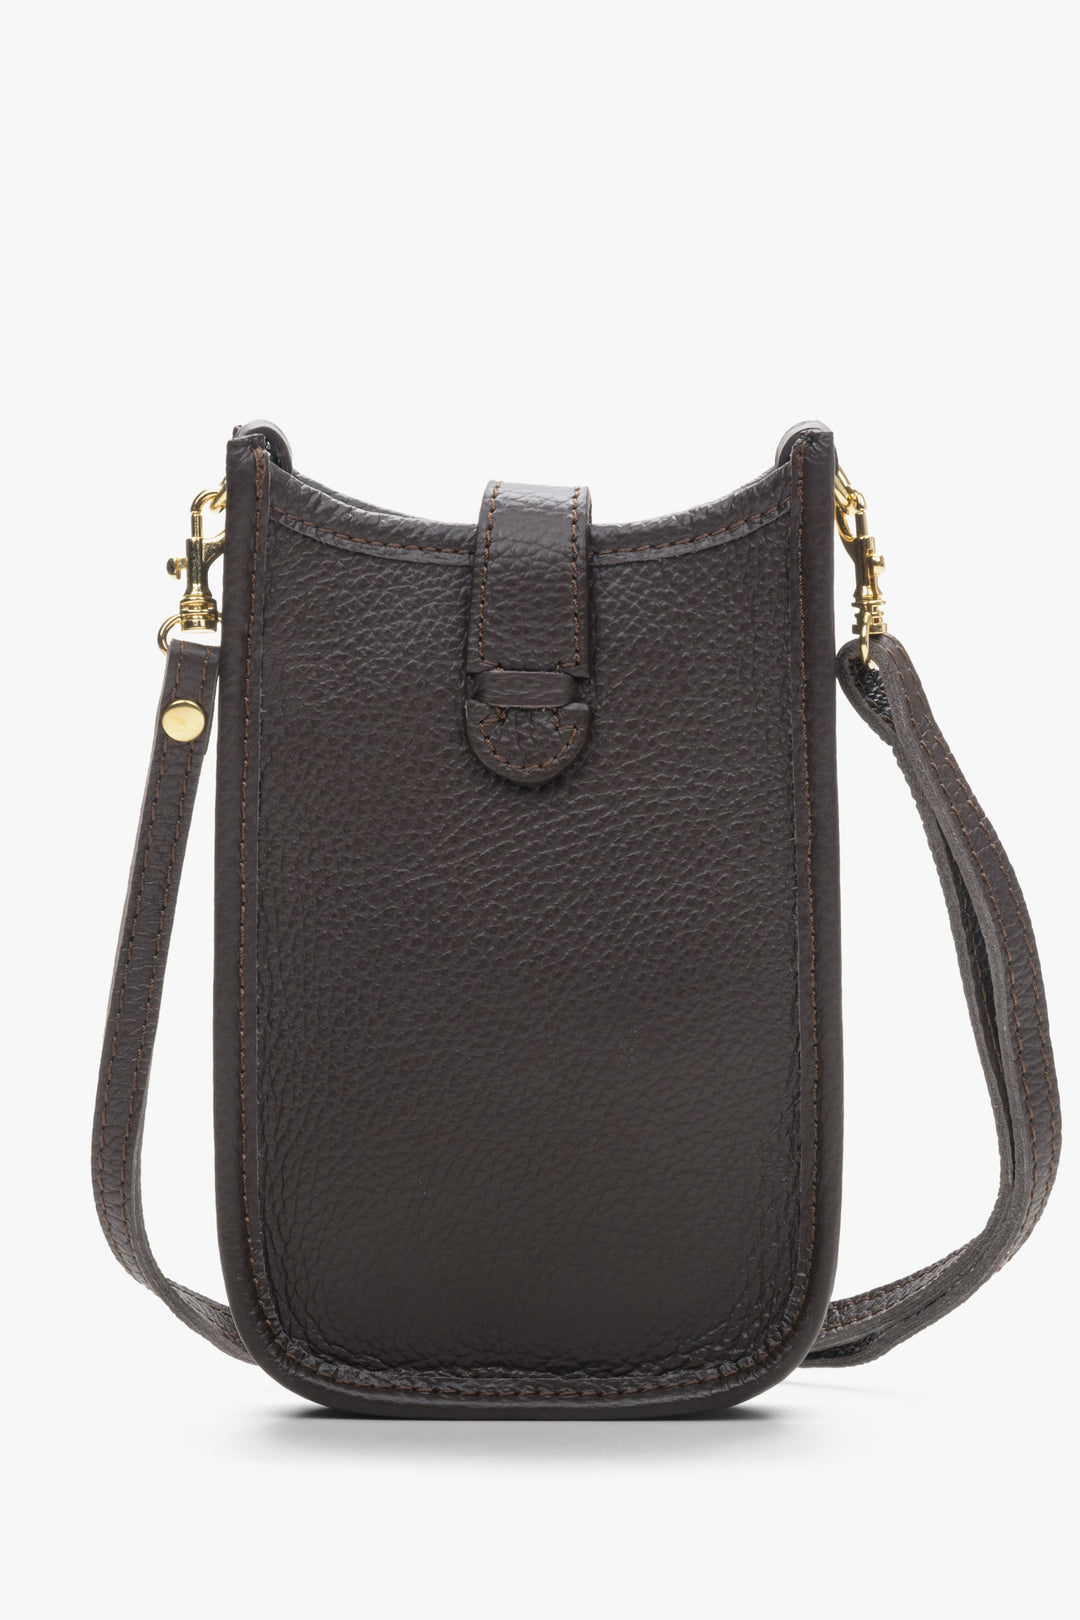 Estro women's dark brown mini handbag.